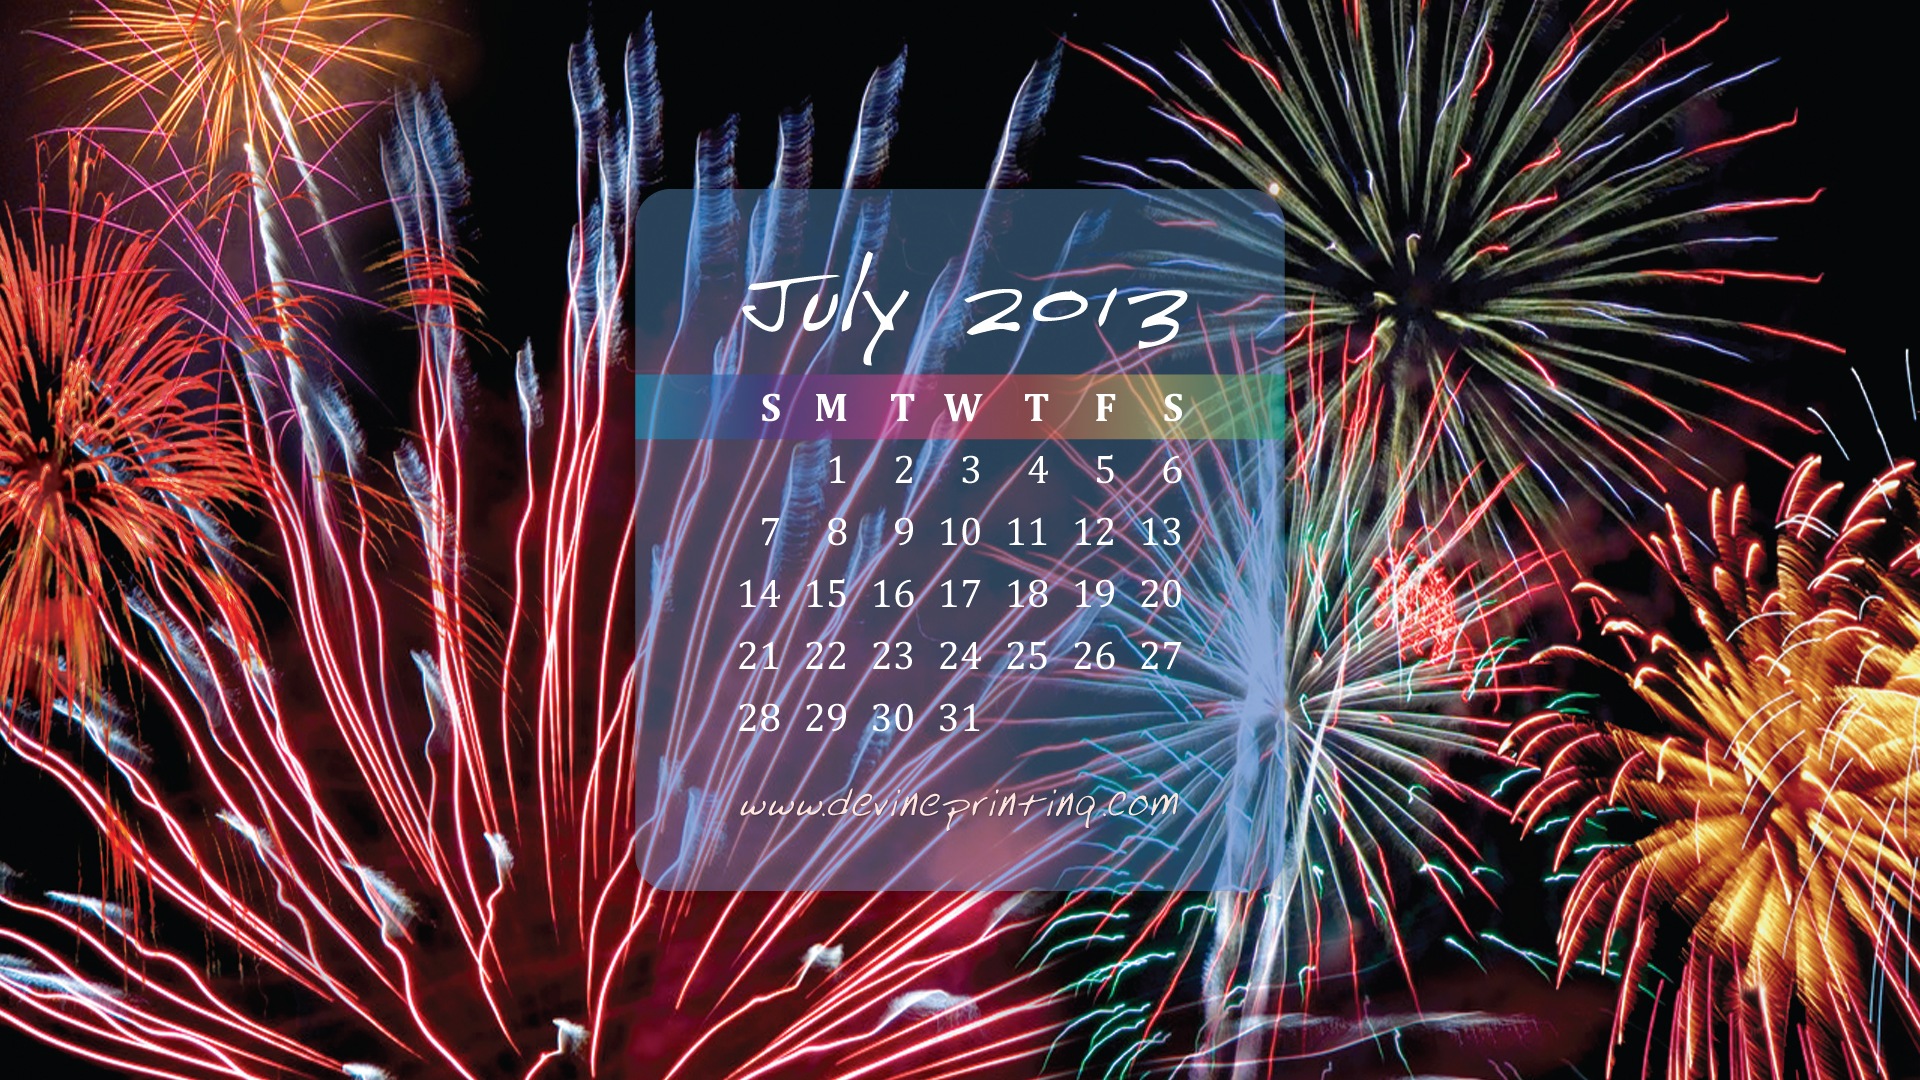 July 2013 calendar wallpaper (2) #14 - 1920x1080